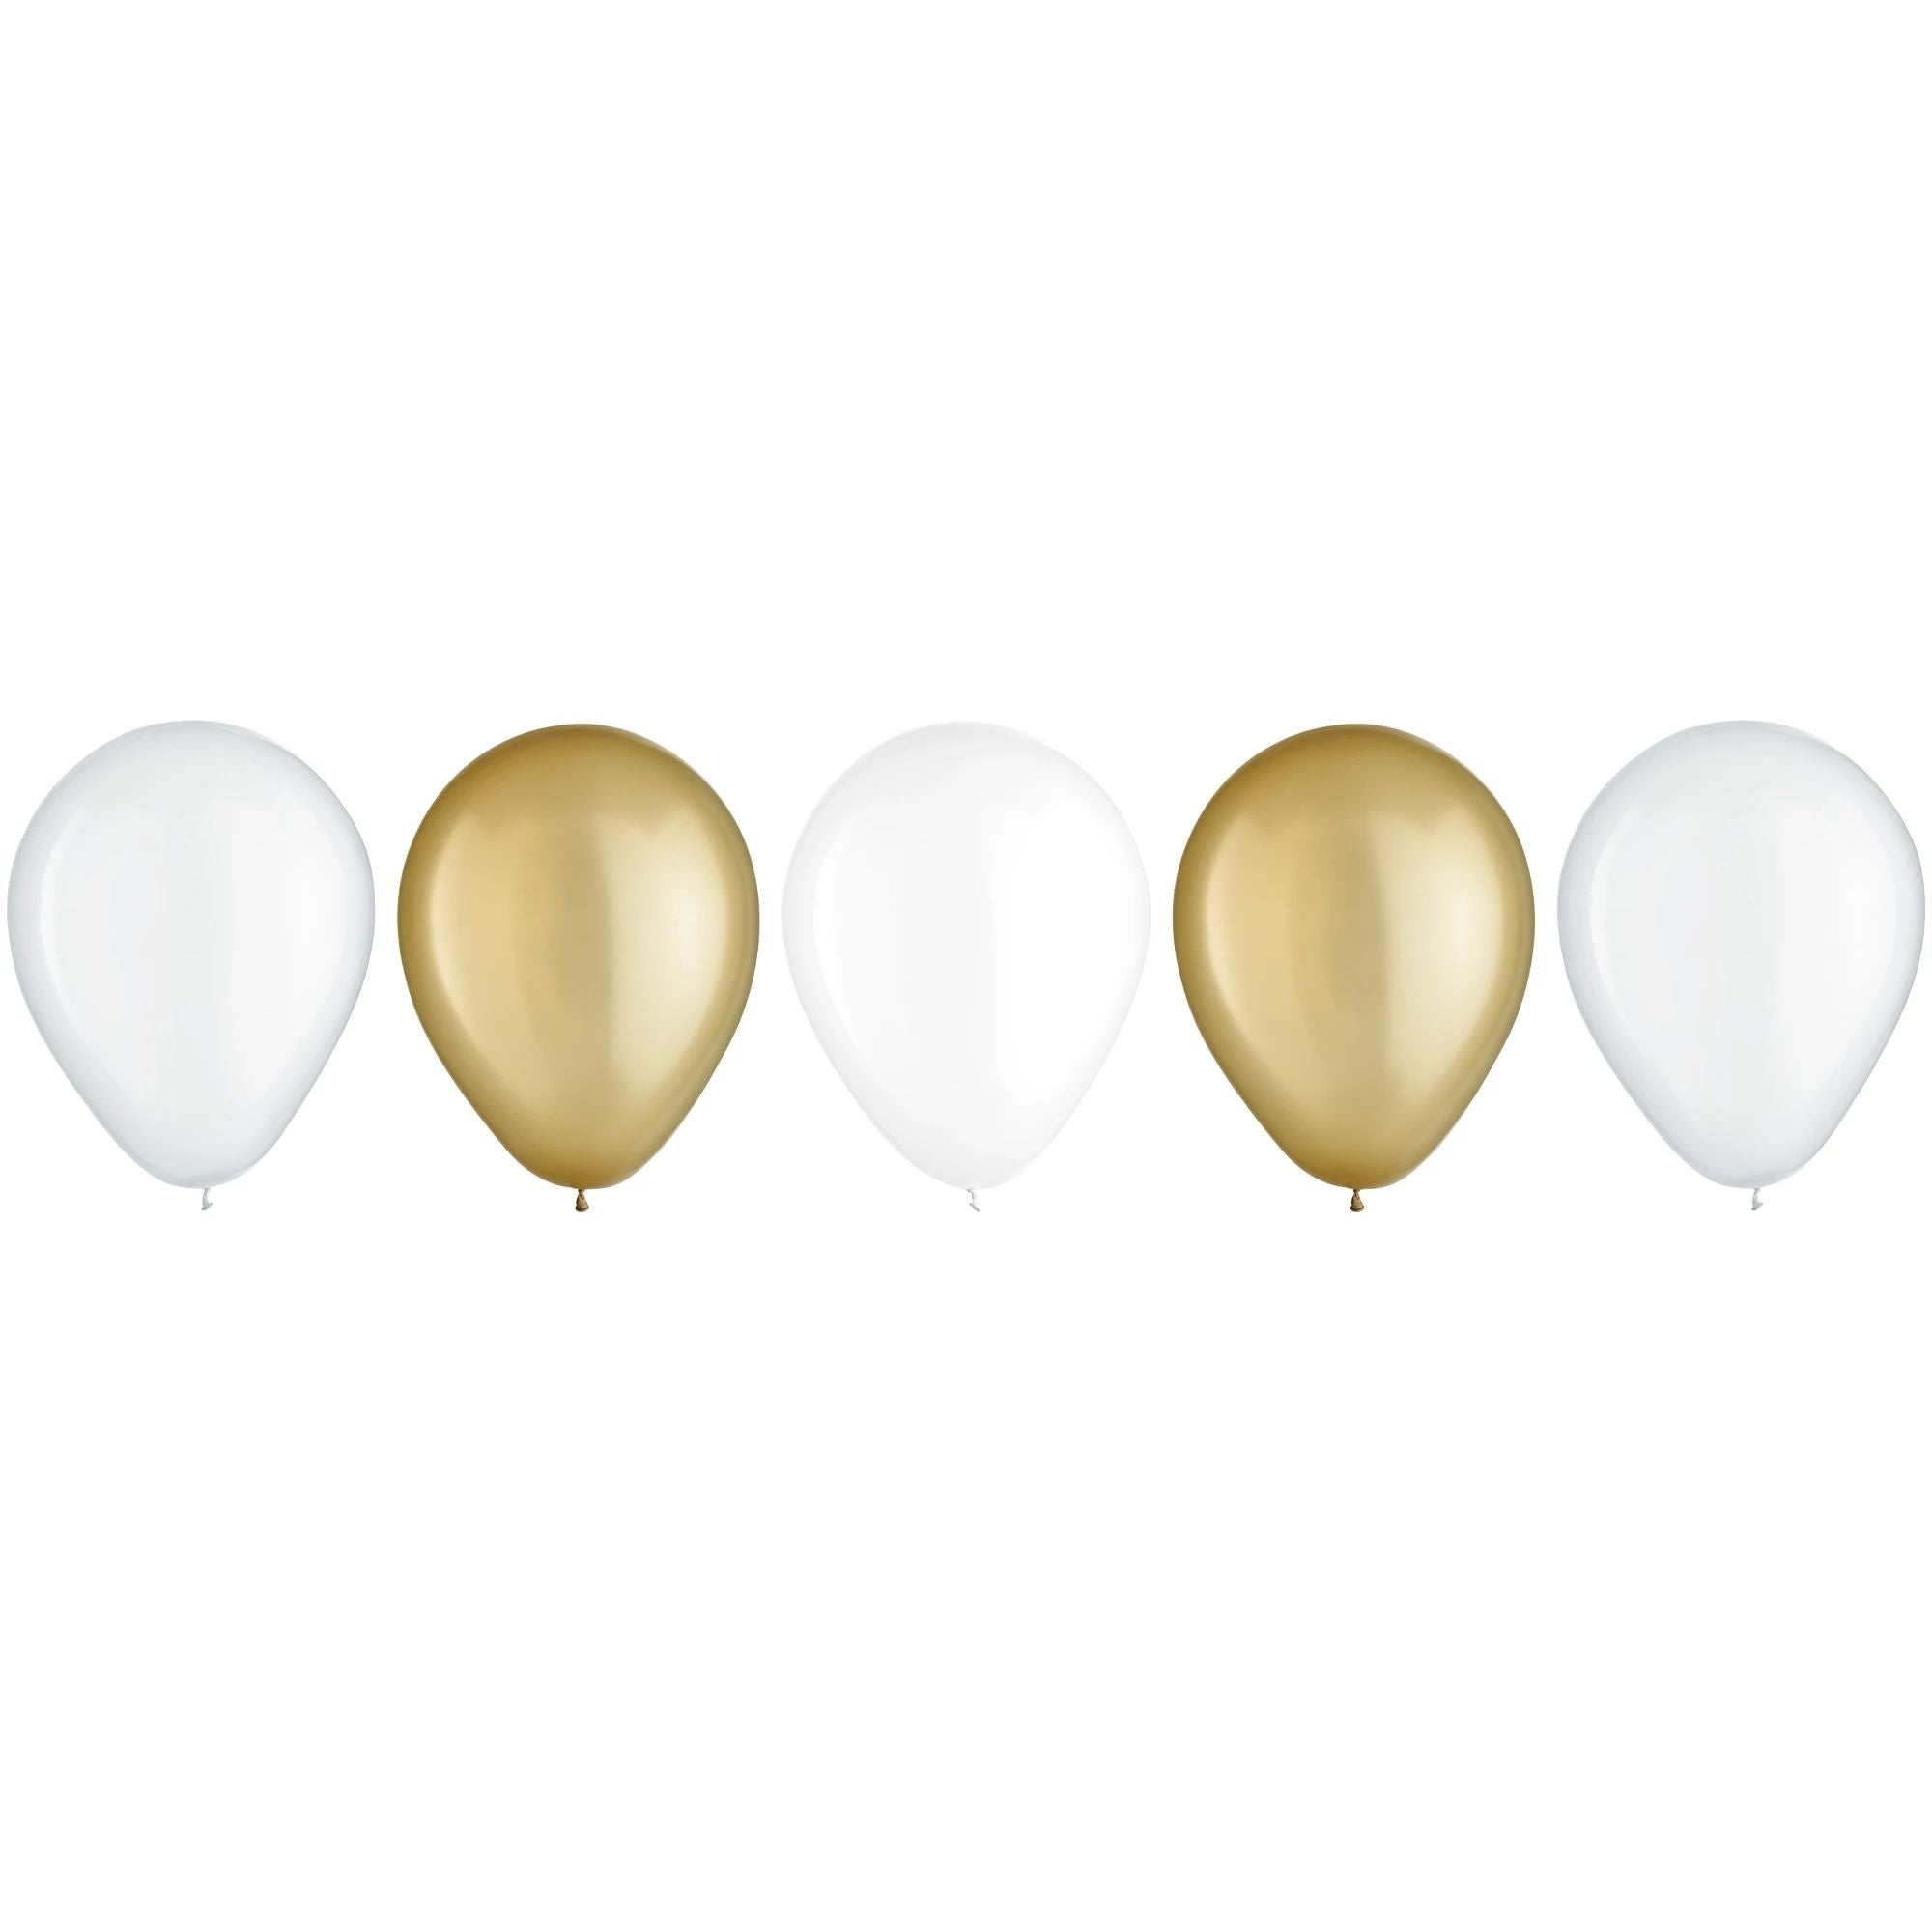 Amscan BALLOONS 11" Latex Balloon Assortment - Golden